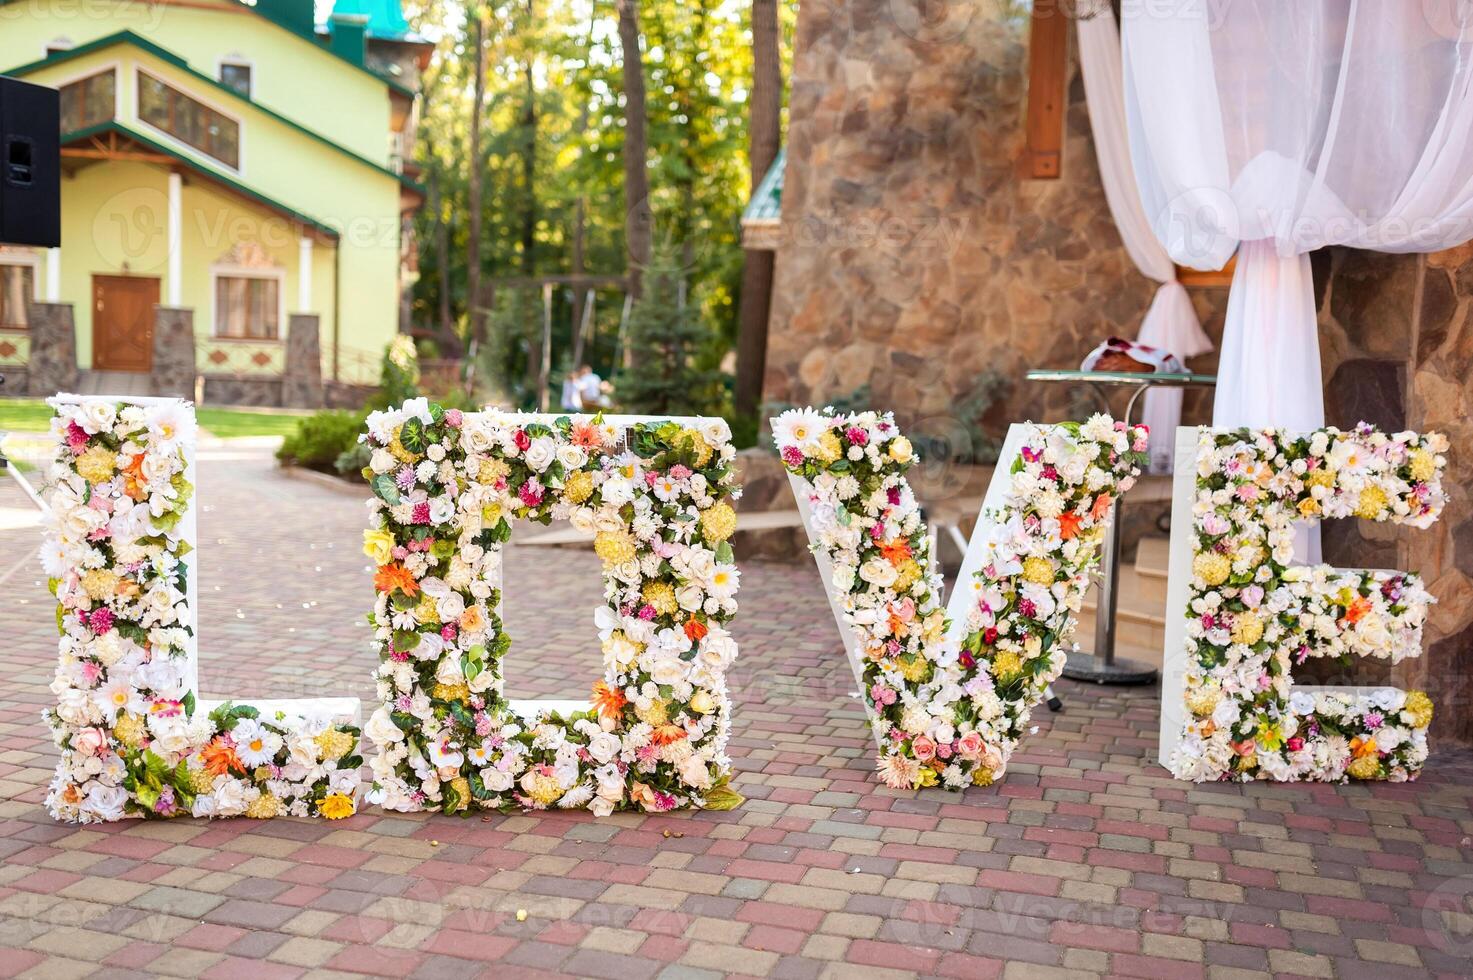 dekorerad för bröllop ceremoni. ord kärlek dekorerad av blommor på bröllop ceremoni foto